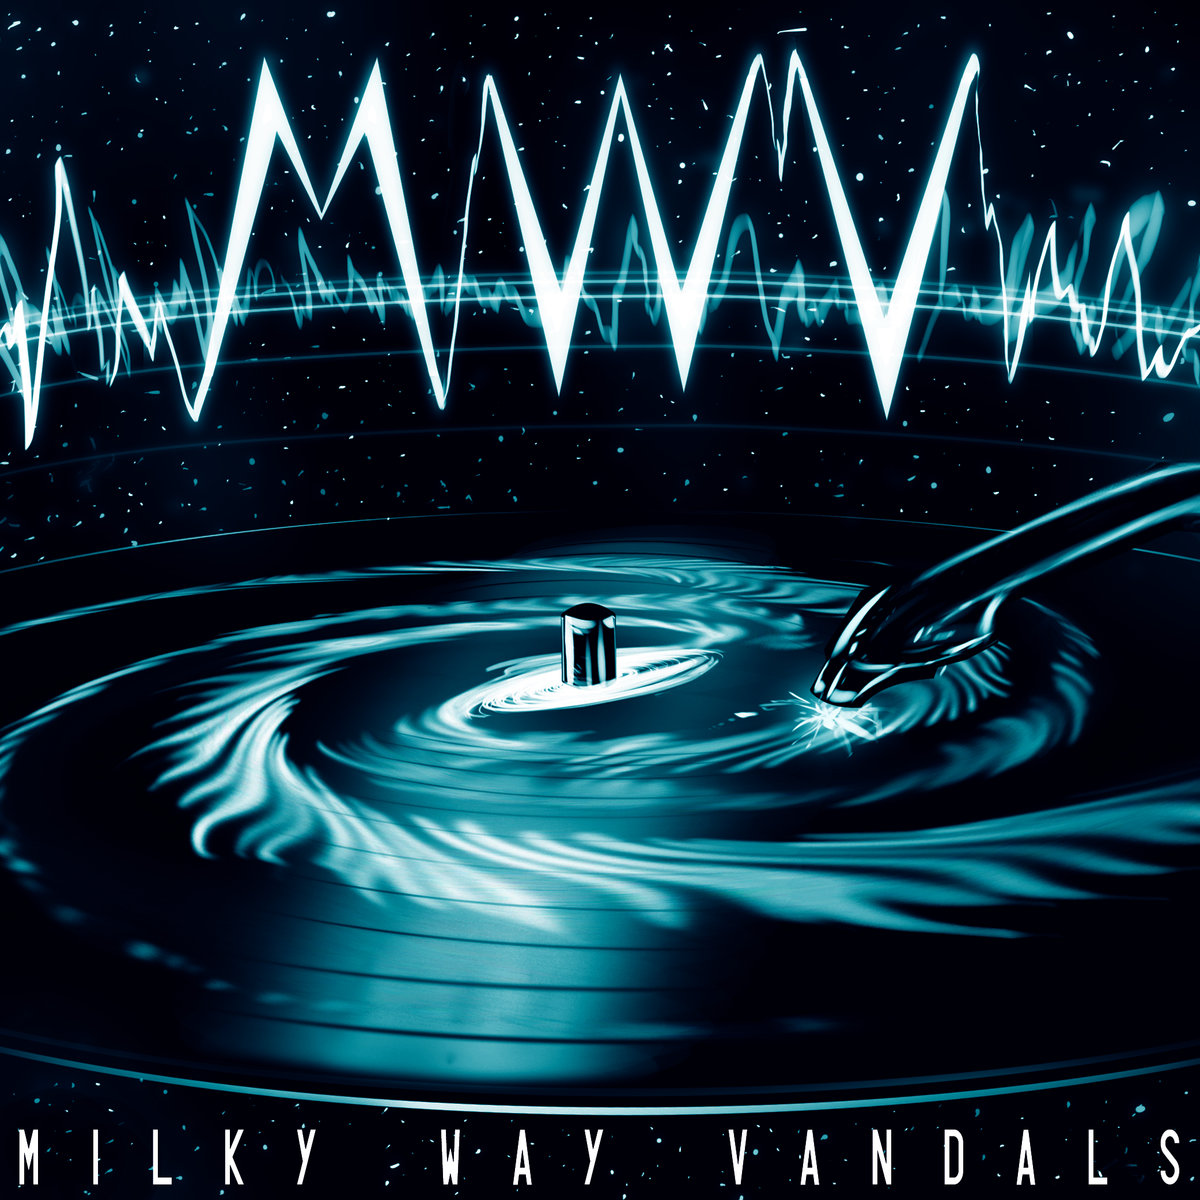 Milky Way Vandals - "MWV" (Release)